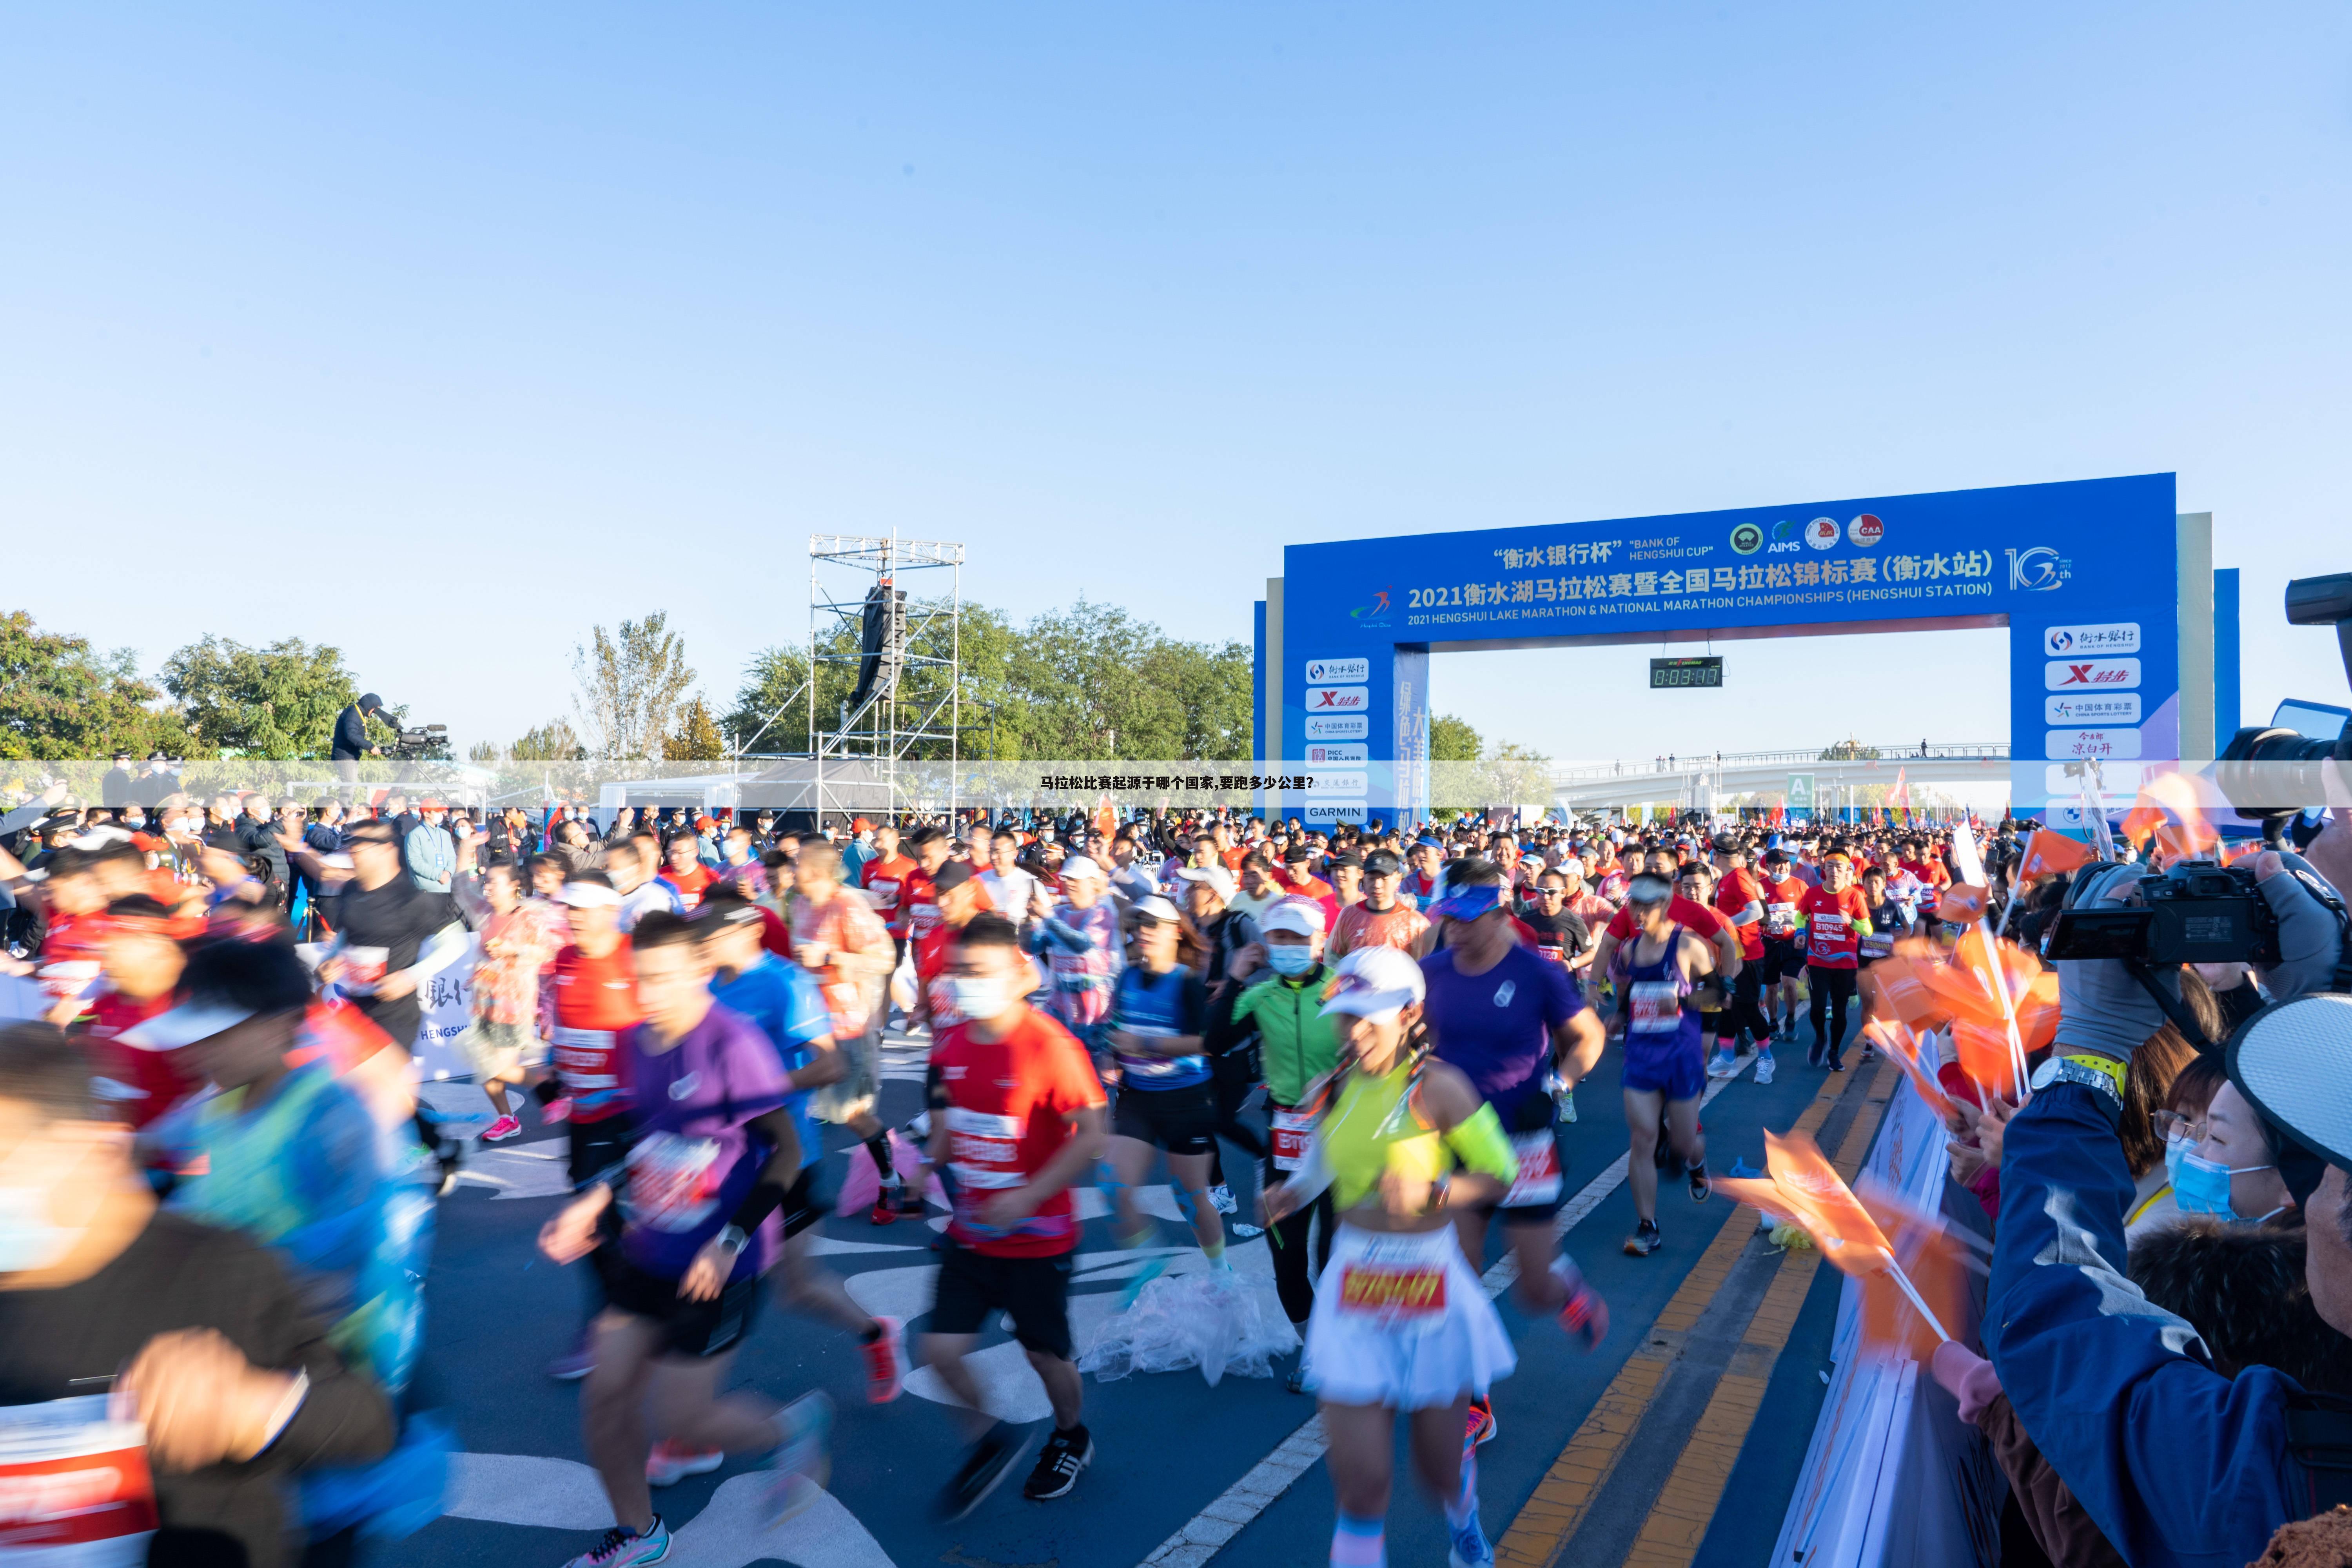 马拉松比赛起源于哪个国家,要跑多少公里？